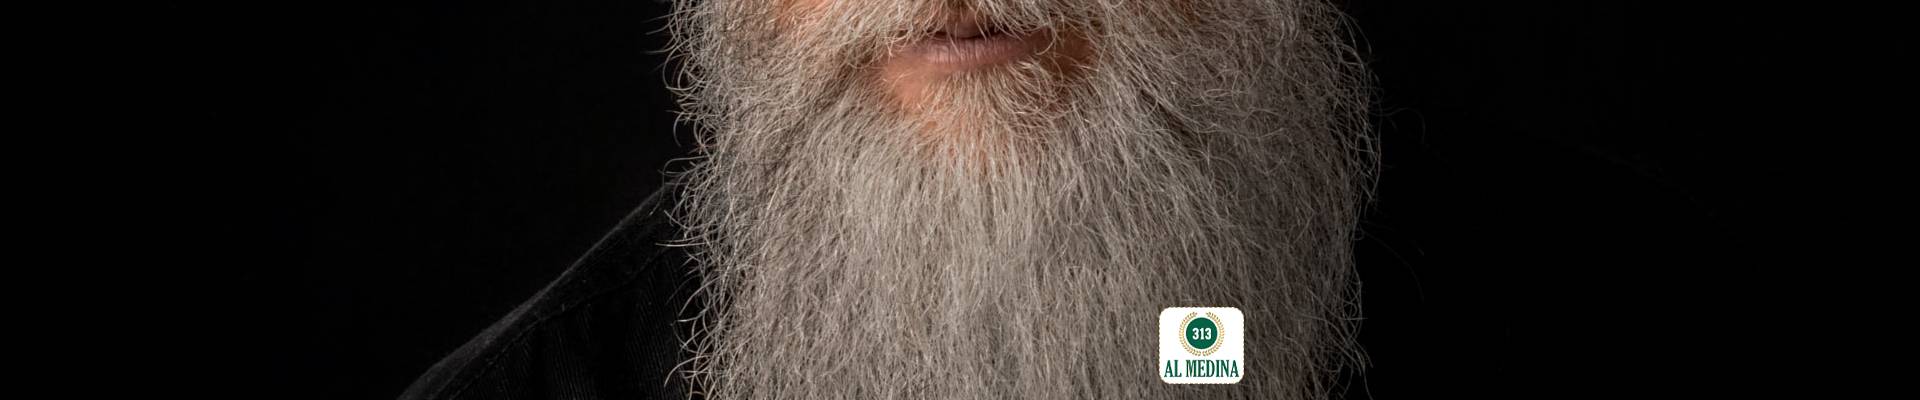 Is a long (fist length) beard Fard or Sunnah?